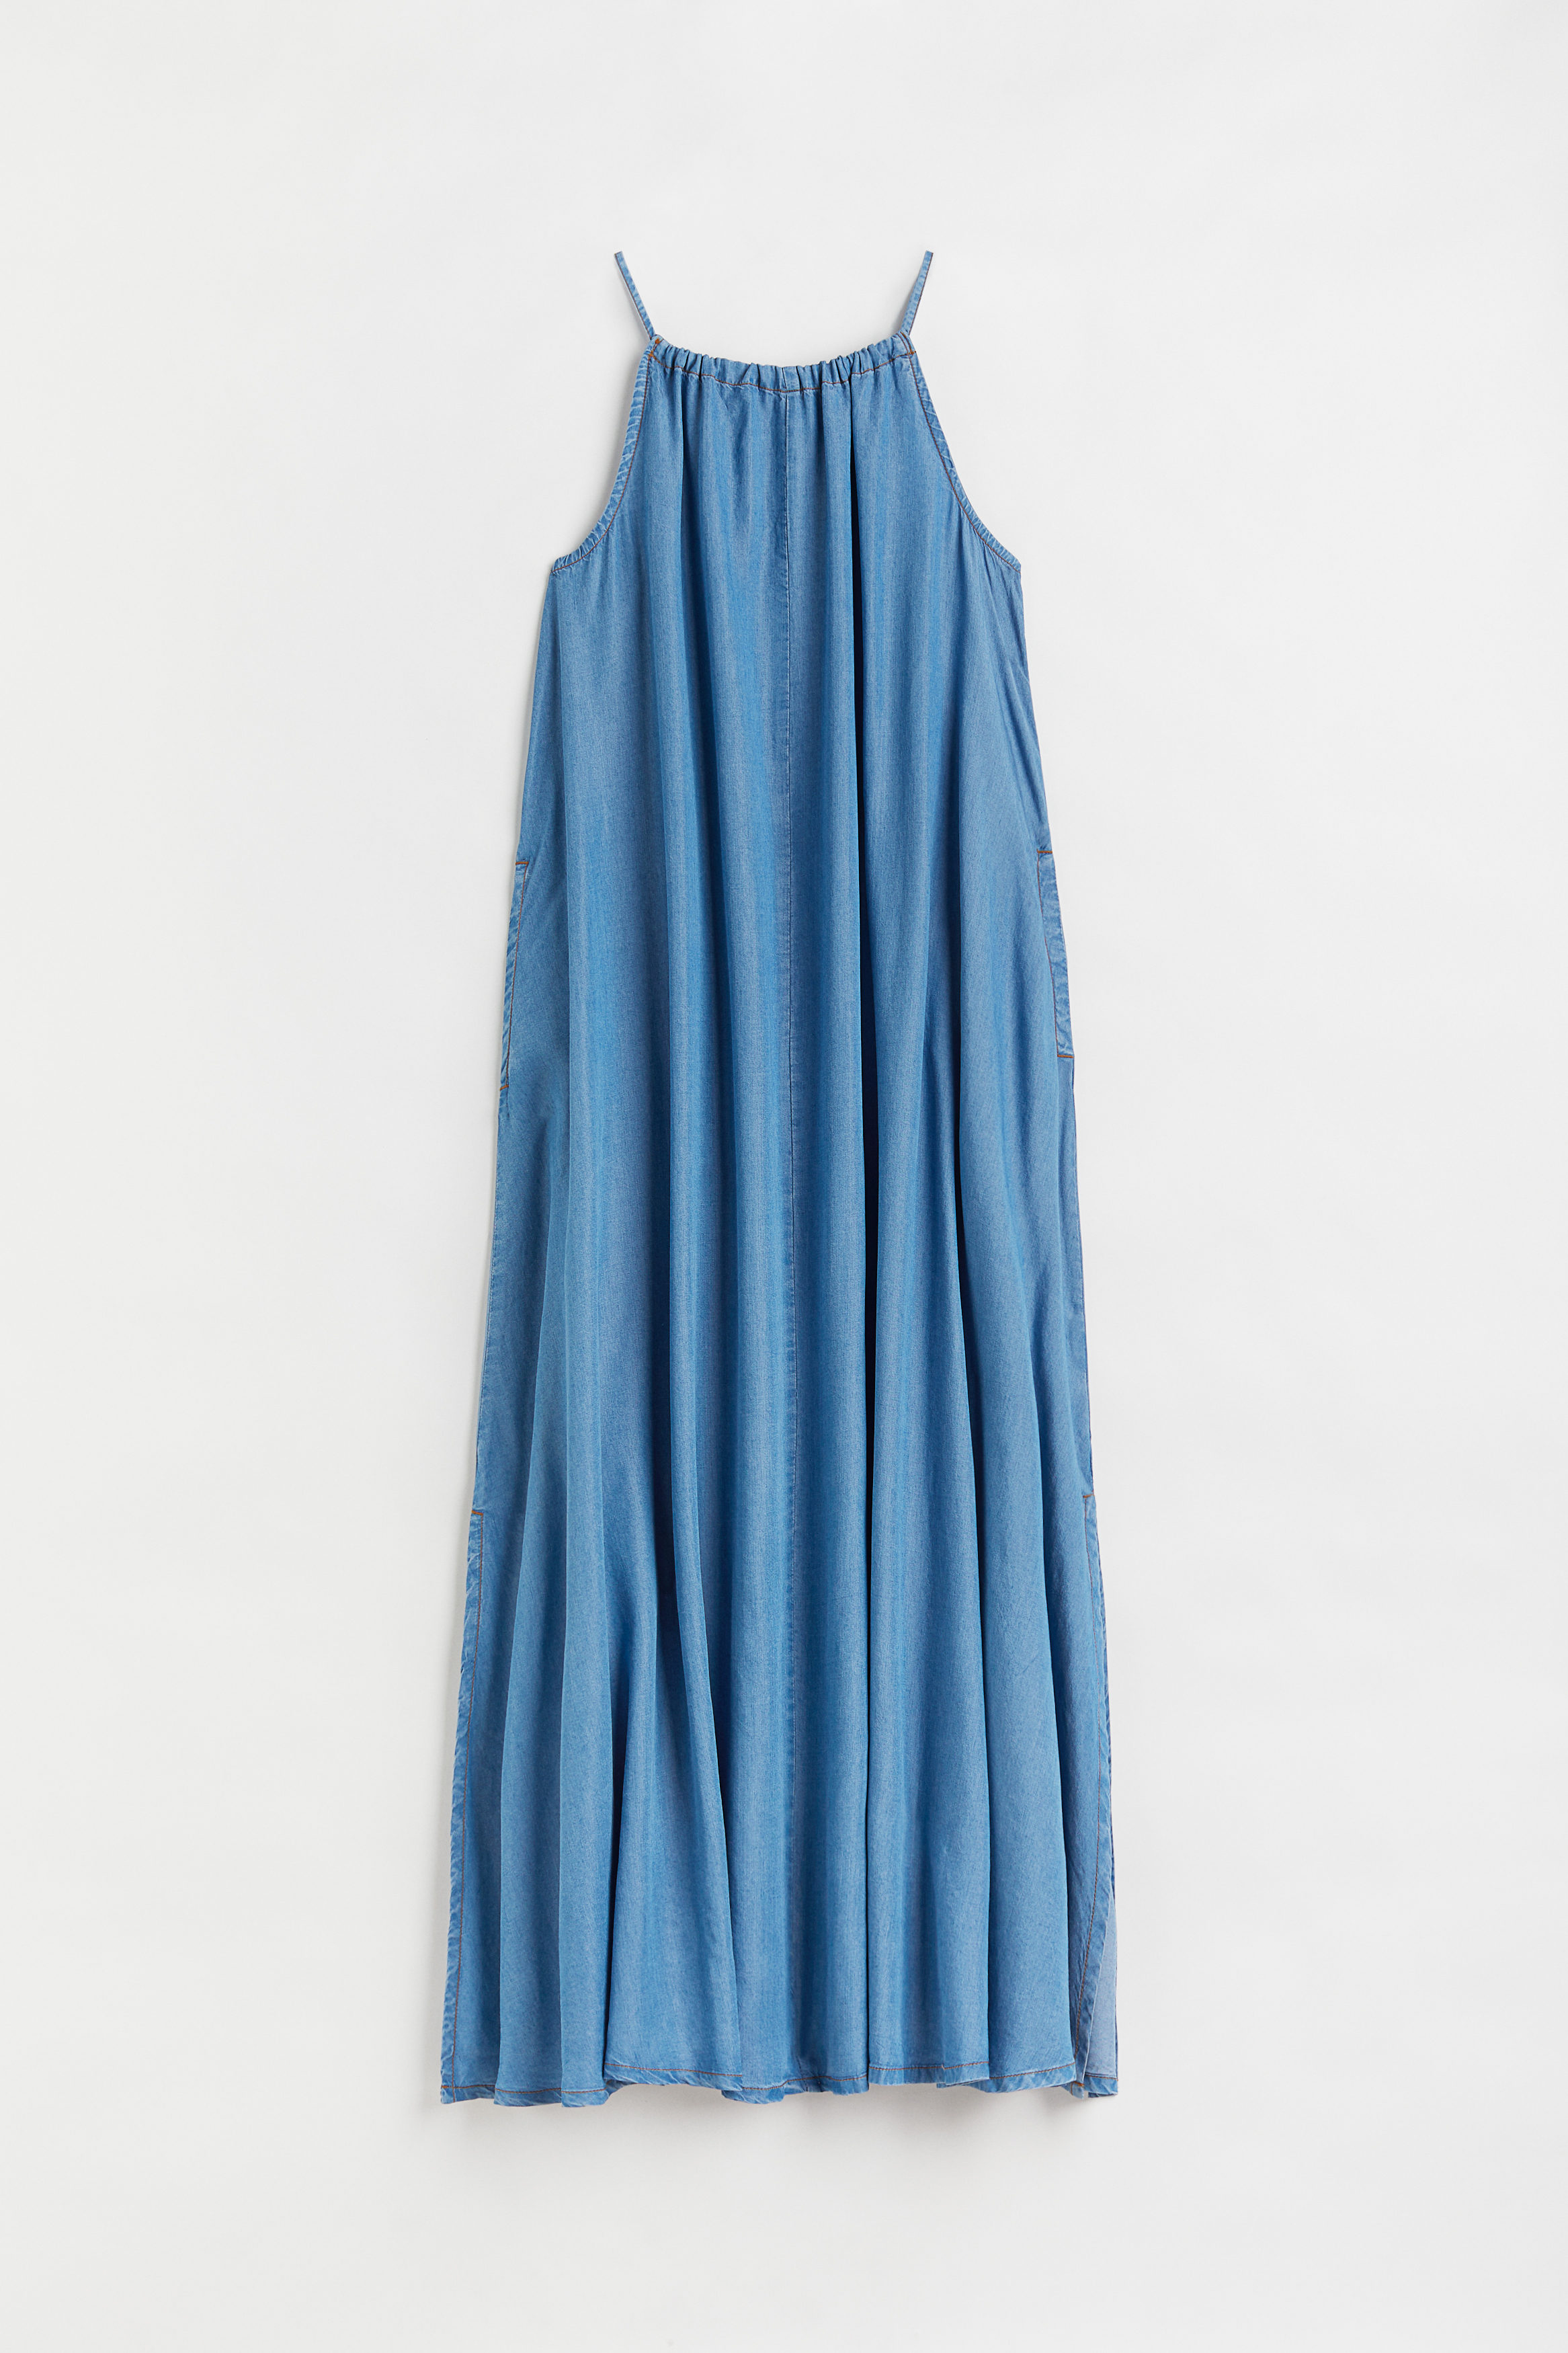 Billede af H&m+ Kjole I Lyocell Denimblå, Hverdagskjoler. Farve: Denim blue størrelse XXL